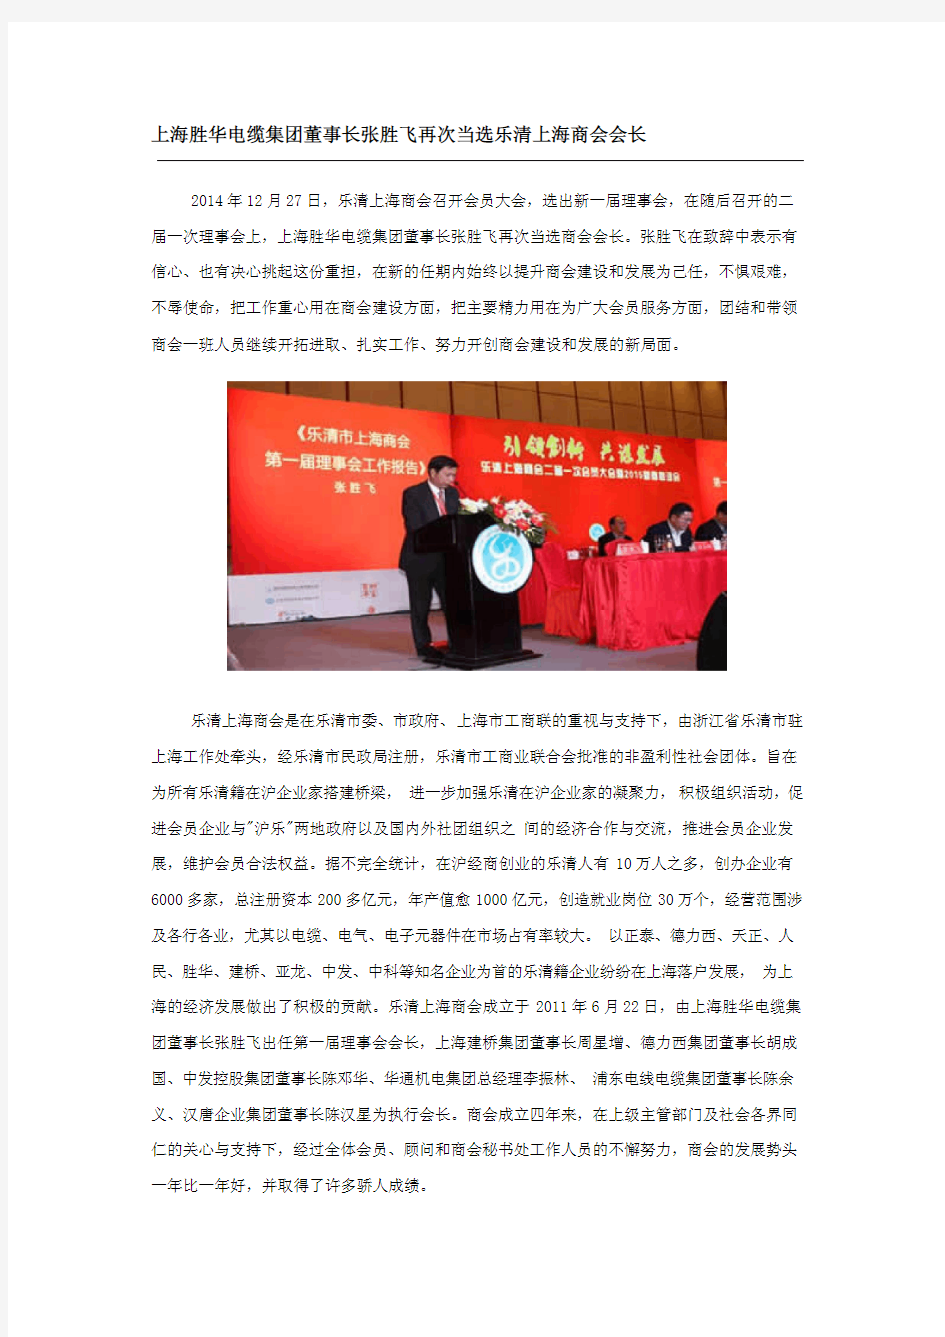 上海胜华电缆集团董事长张胜飞再次当选乐清上海商会会长 